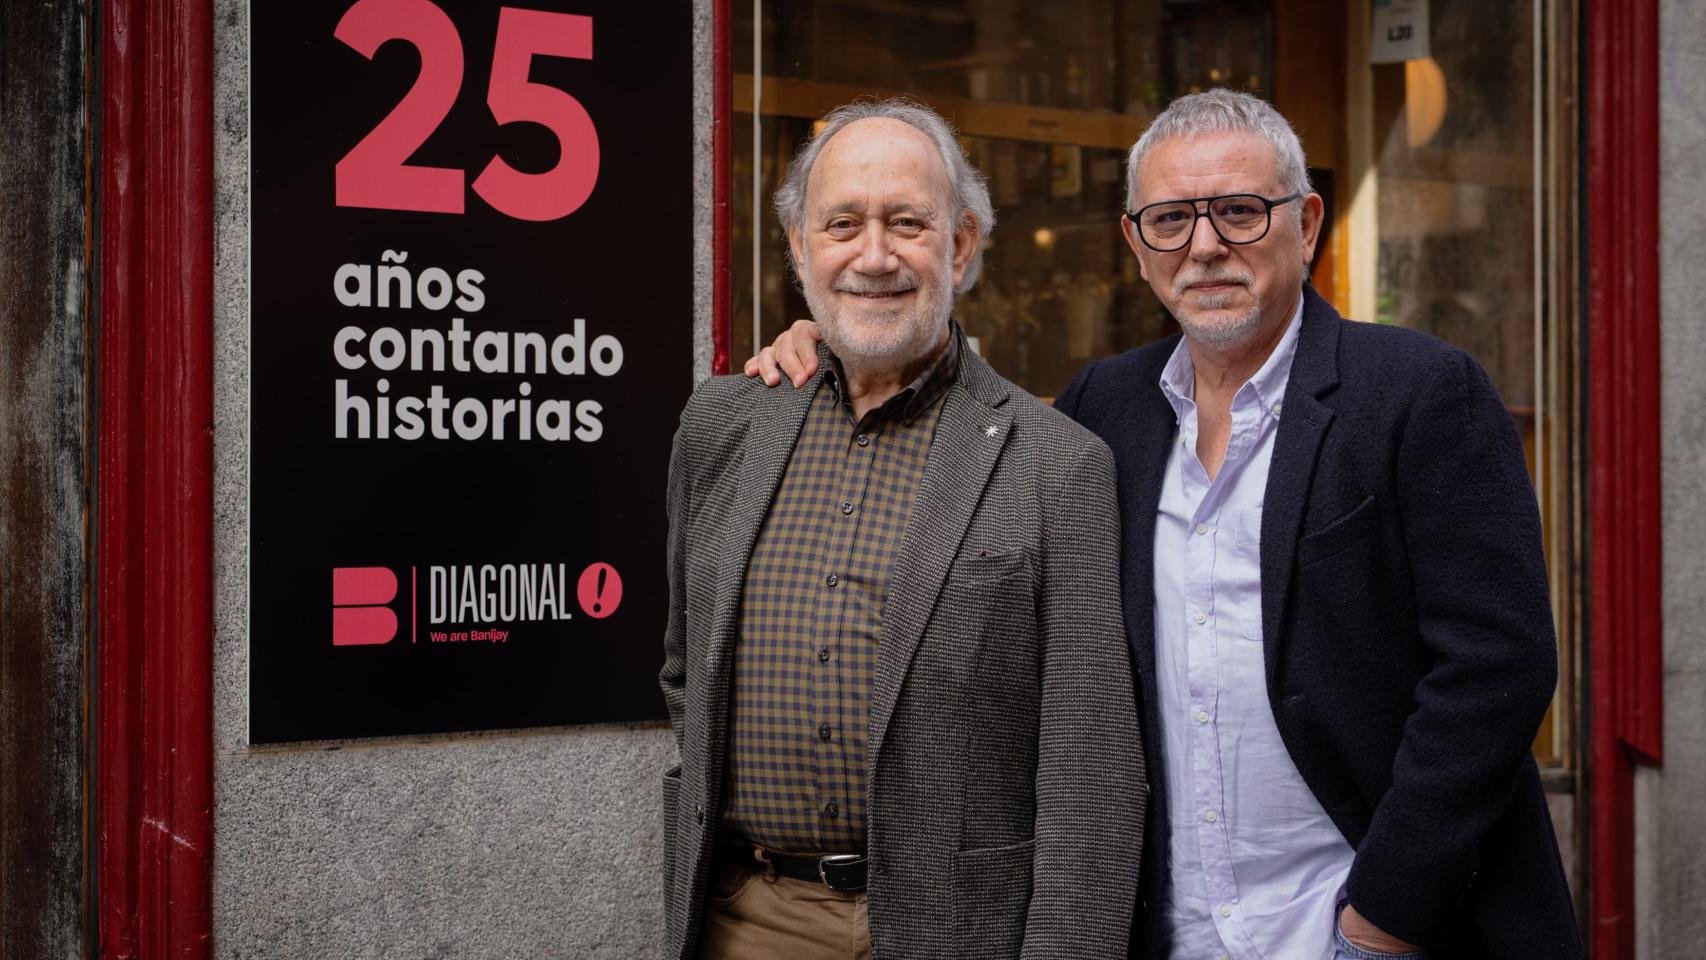 Jaume Banacolocha ,CEO de Diagonal, y Jordi Frades, director general de Diagonal.